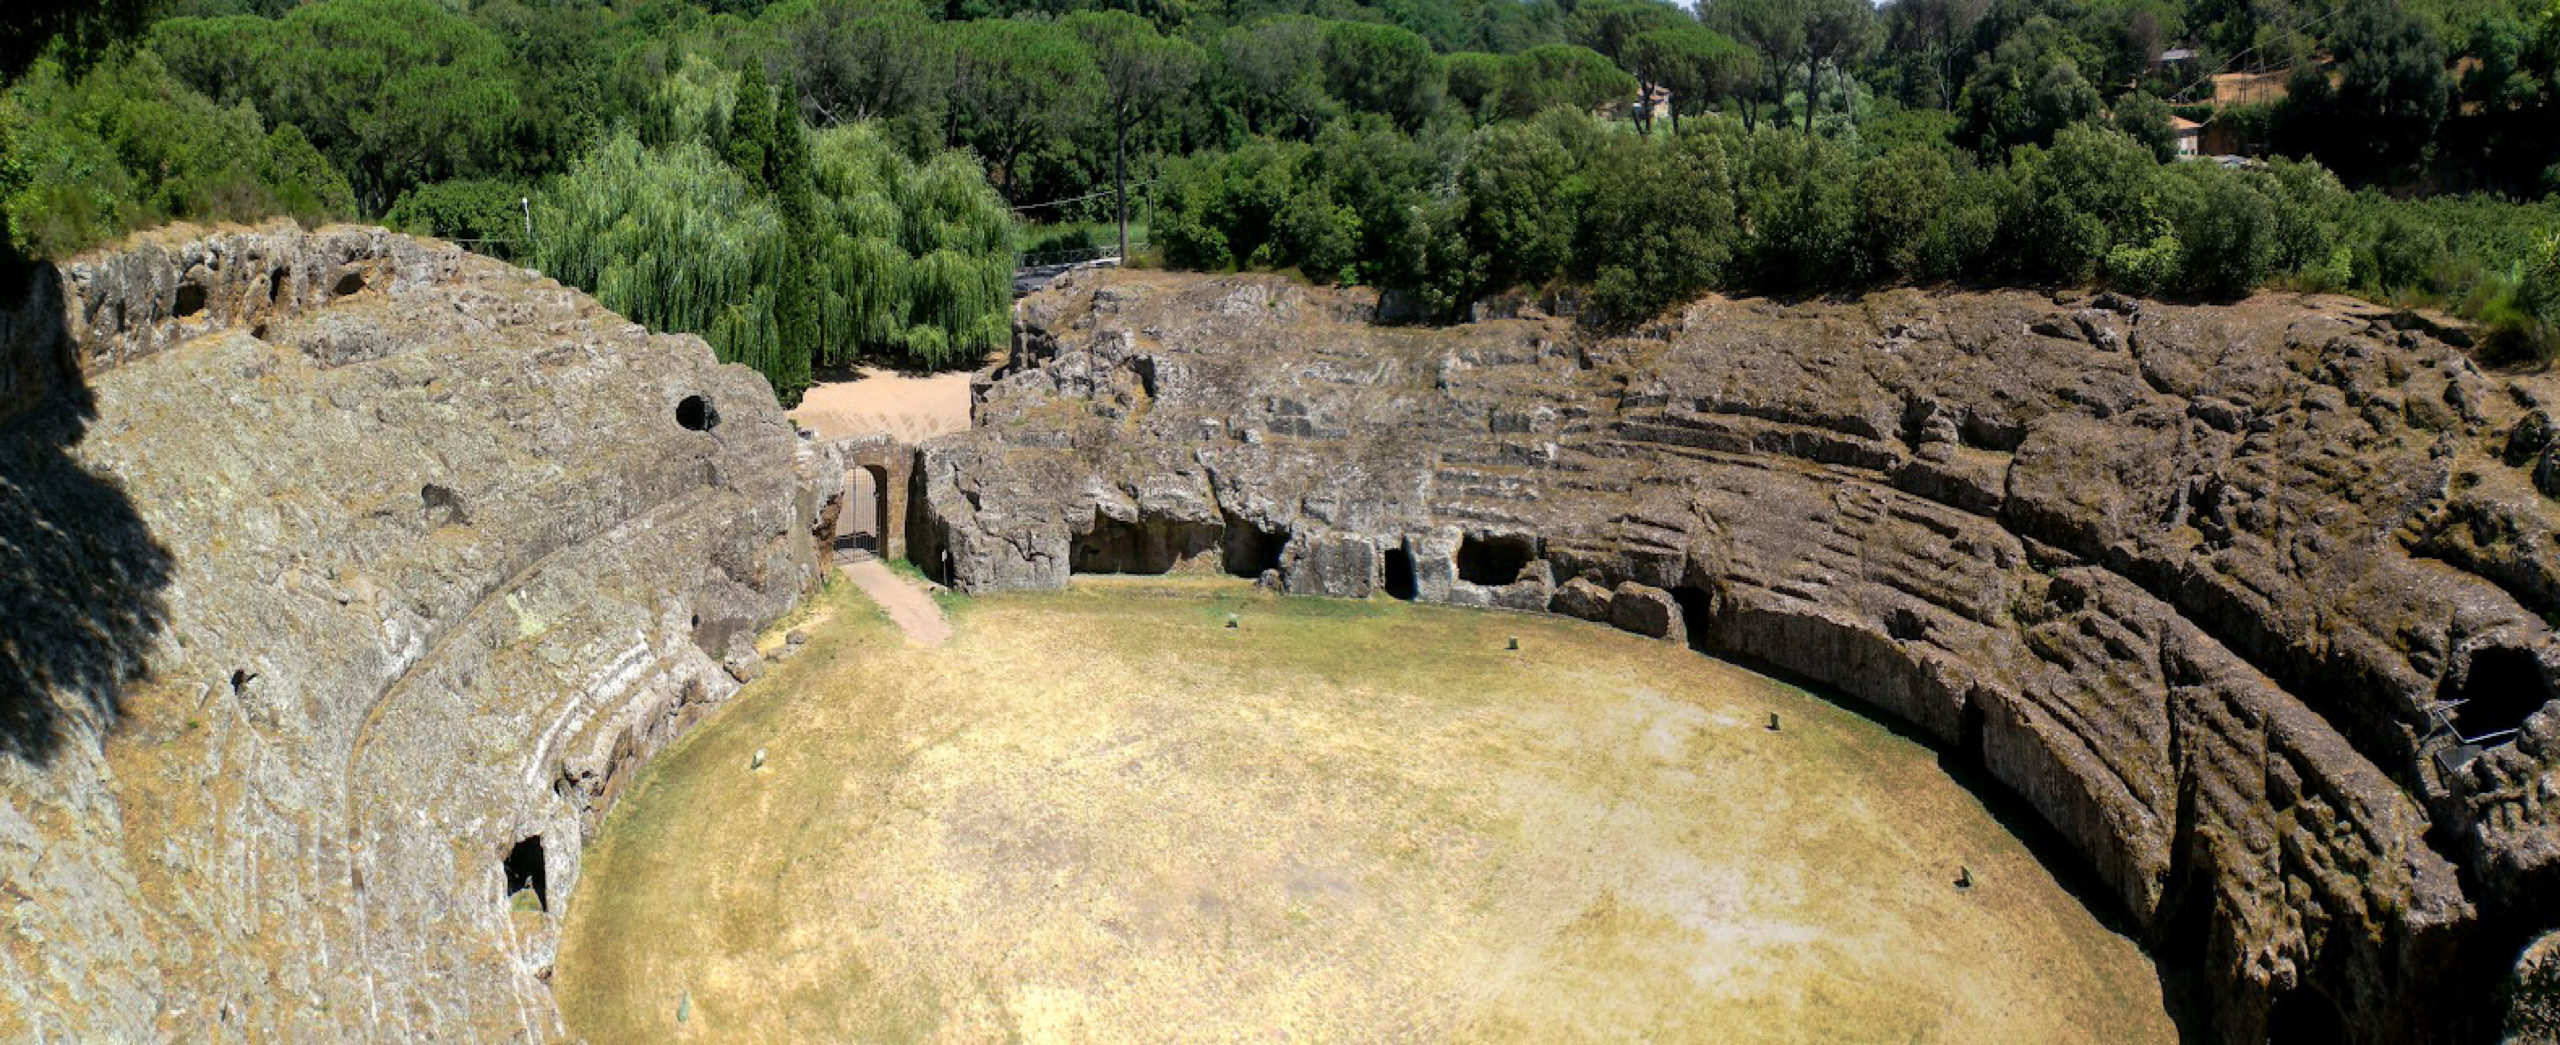 Sutri VT Anfiteatro romano scavato nel tufo